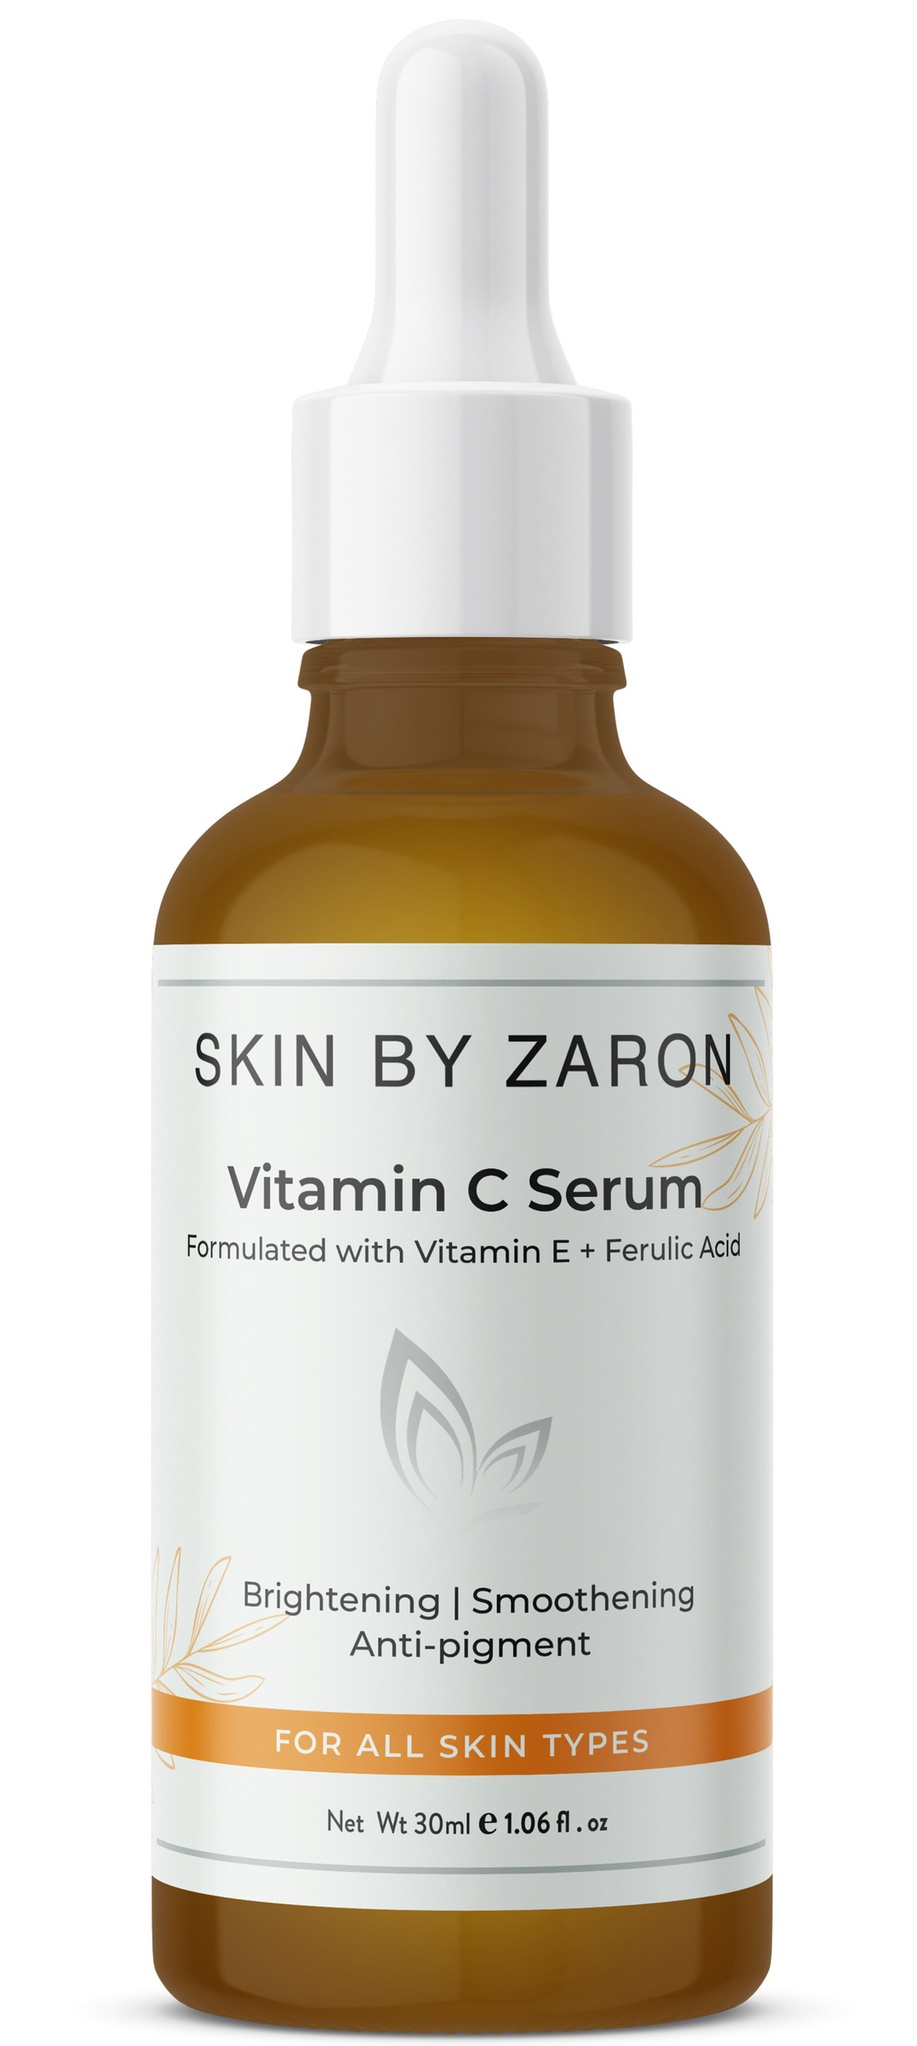 Skin by zaron Vitamin C Serum